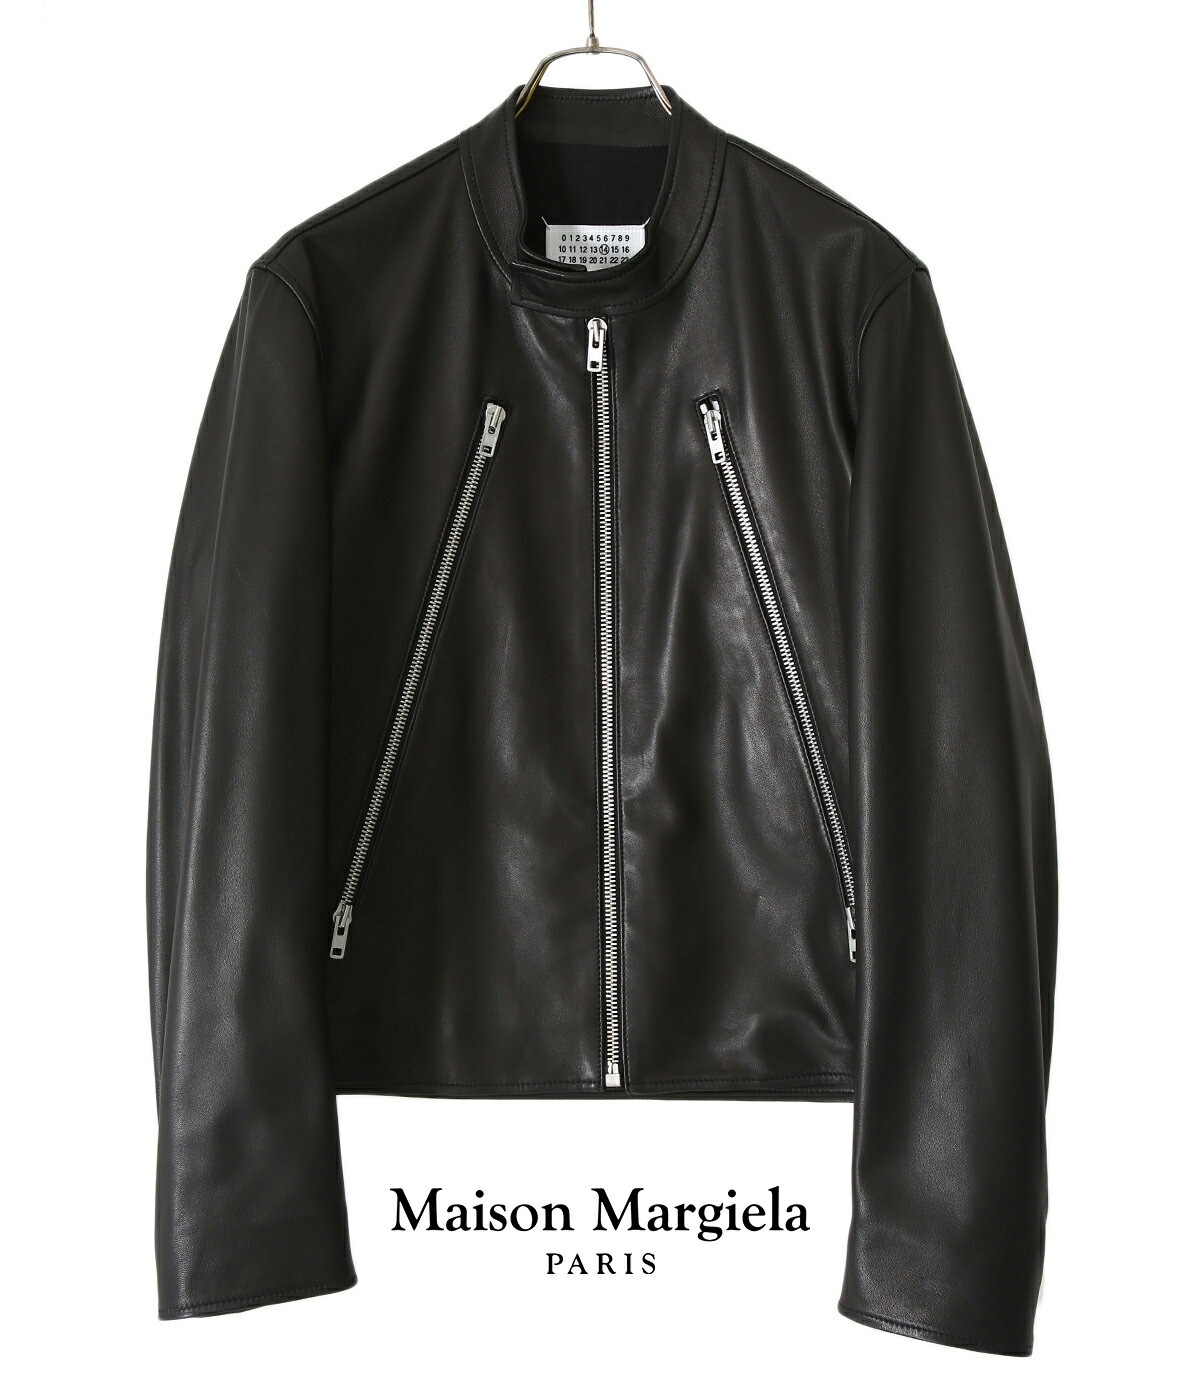 Maison Margiela / メゾン マルジェラ ： 5-ZIP LEATHER JACKET 